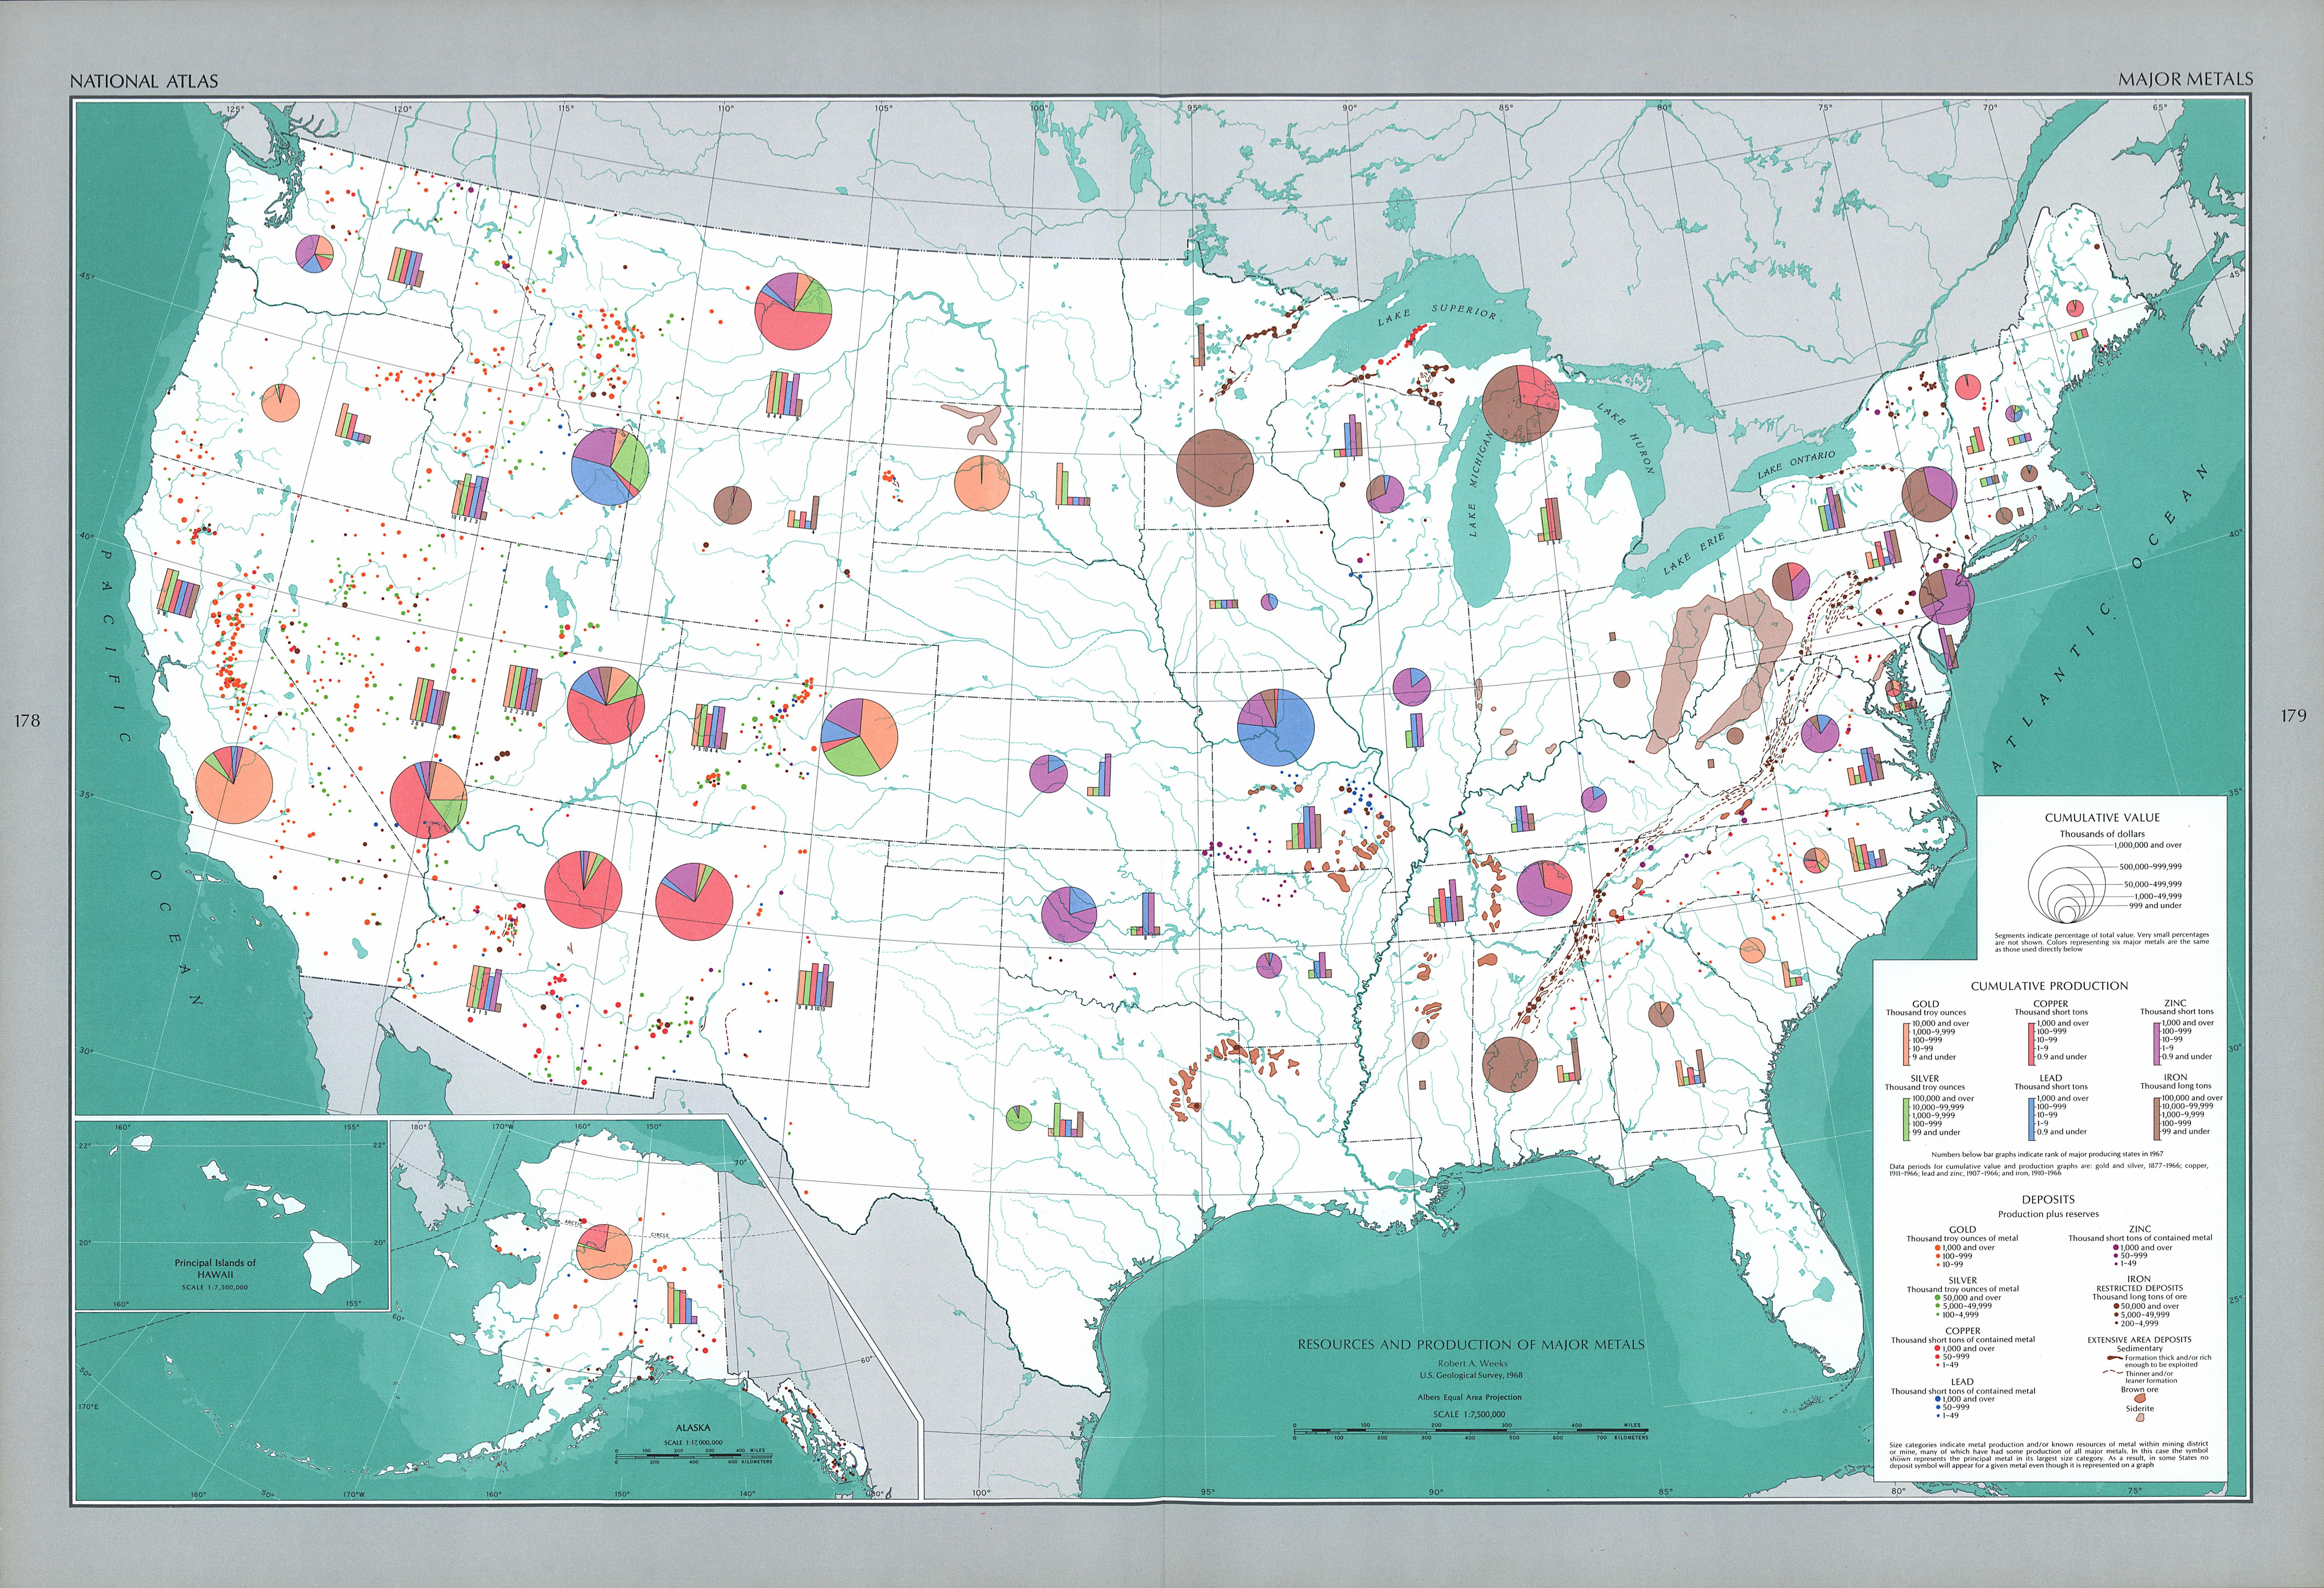 Главные полезные ископаемые сша. Минеральные ресурсы США карта. Природные ископаемые США карта. Полезные ископаемые США на карте. Карта природных ресурсов США.